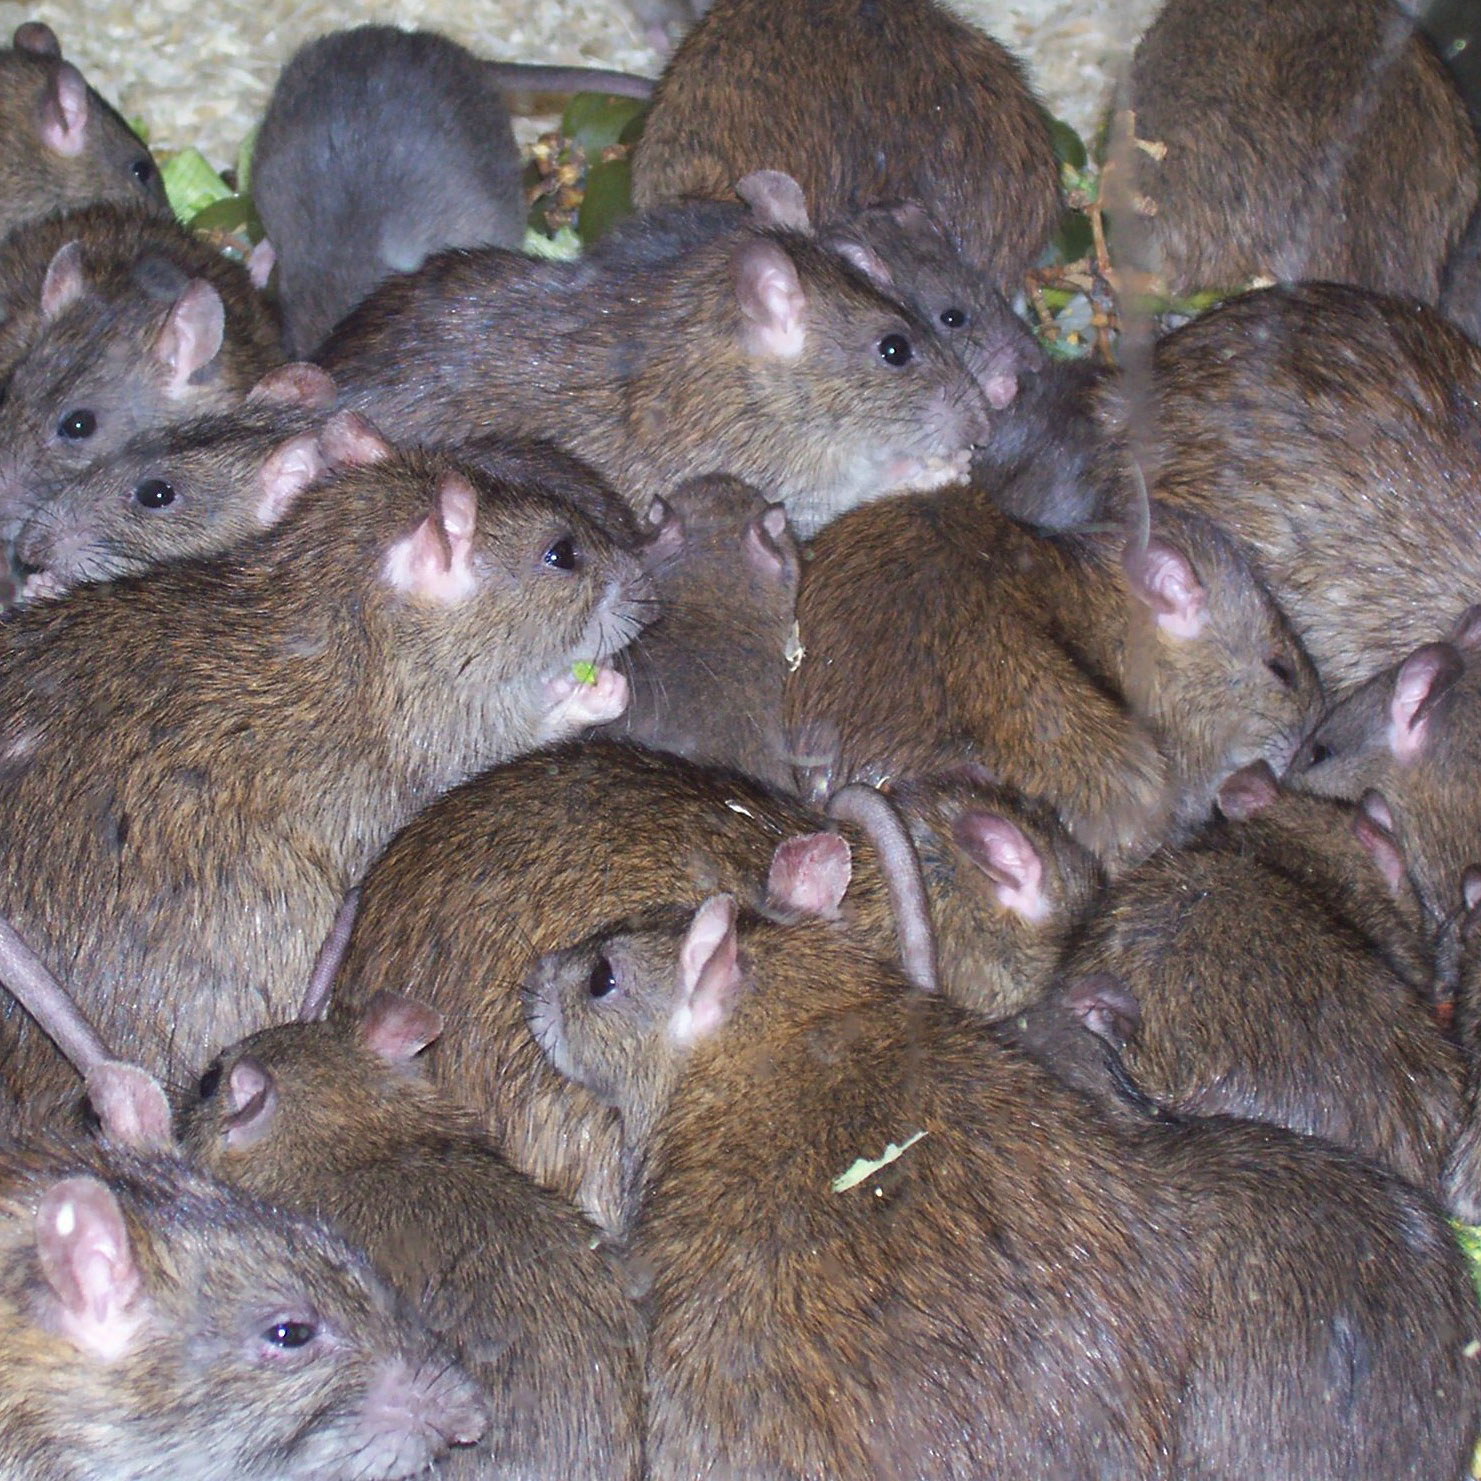 Rat invasion